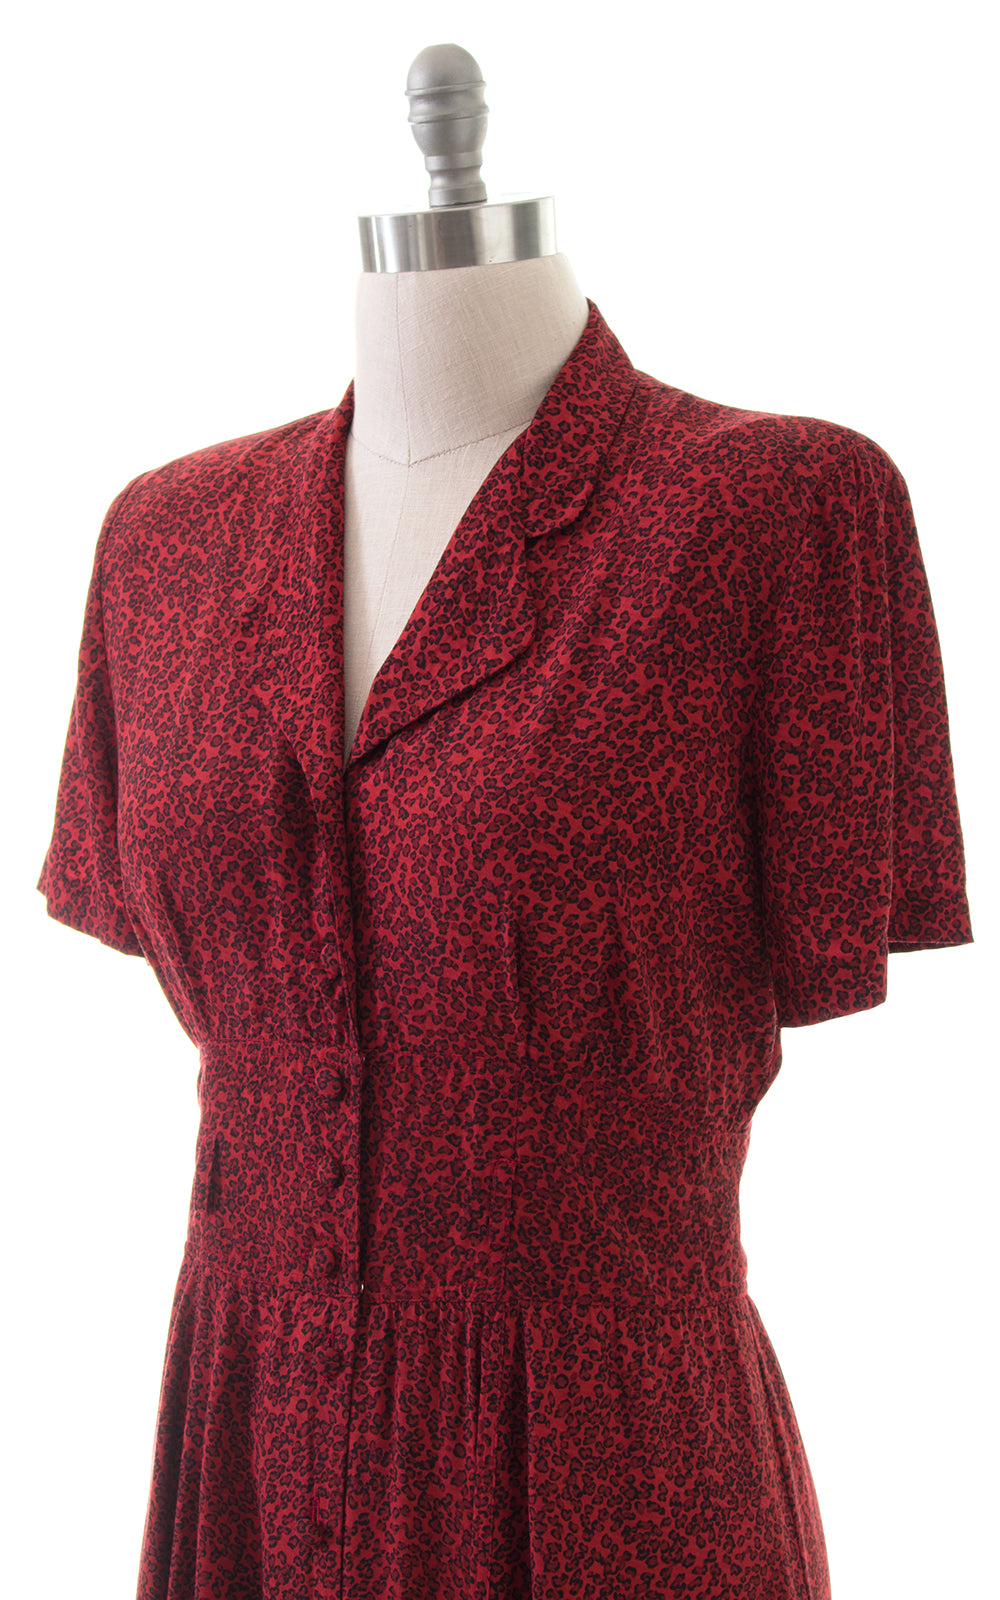 1980s Leopard Print Rayon Shirtwaist Dress